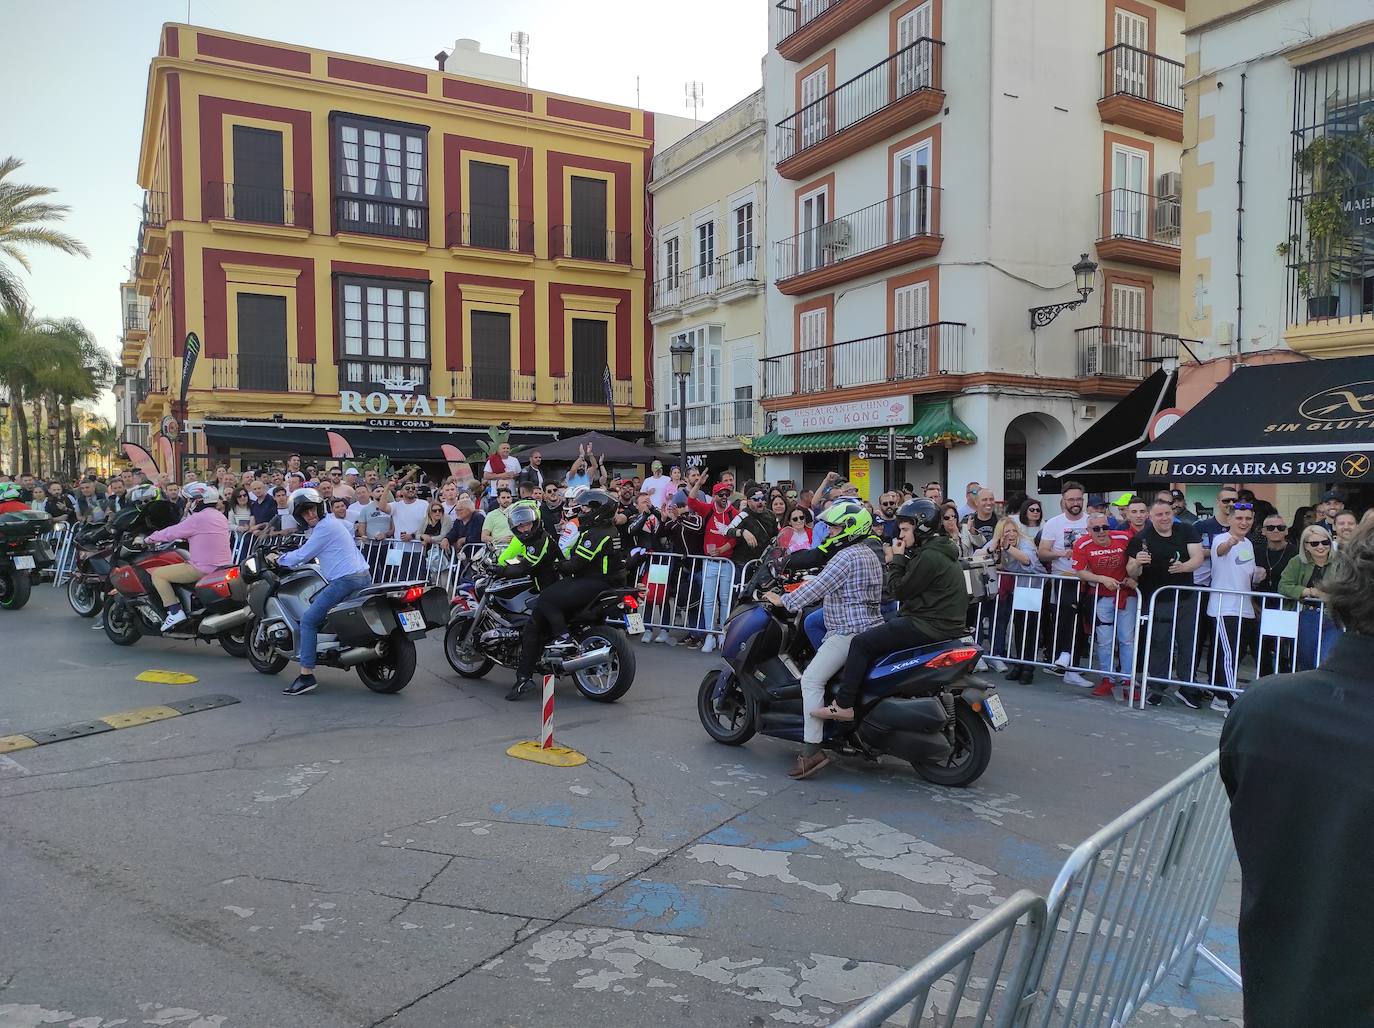 29 de abril. El Mundial de Motociclismo volvía a celebrar el Gran Premio de España en el Circuito de Jerez con público. Aficionados a las dos ruedas se desplazaron desde distintos lugares a la provincia para celebrar la tradicional Motorada.